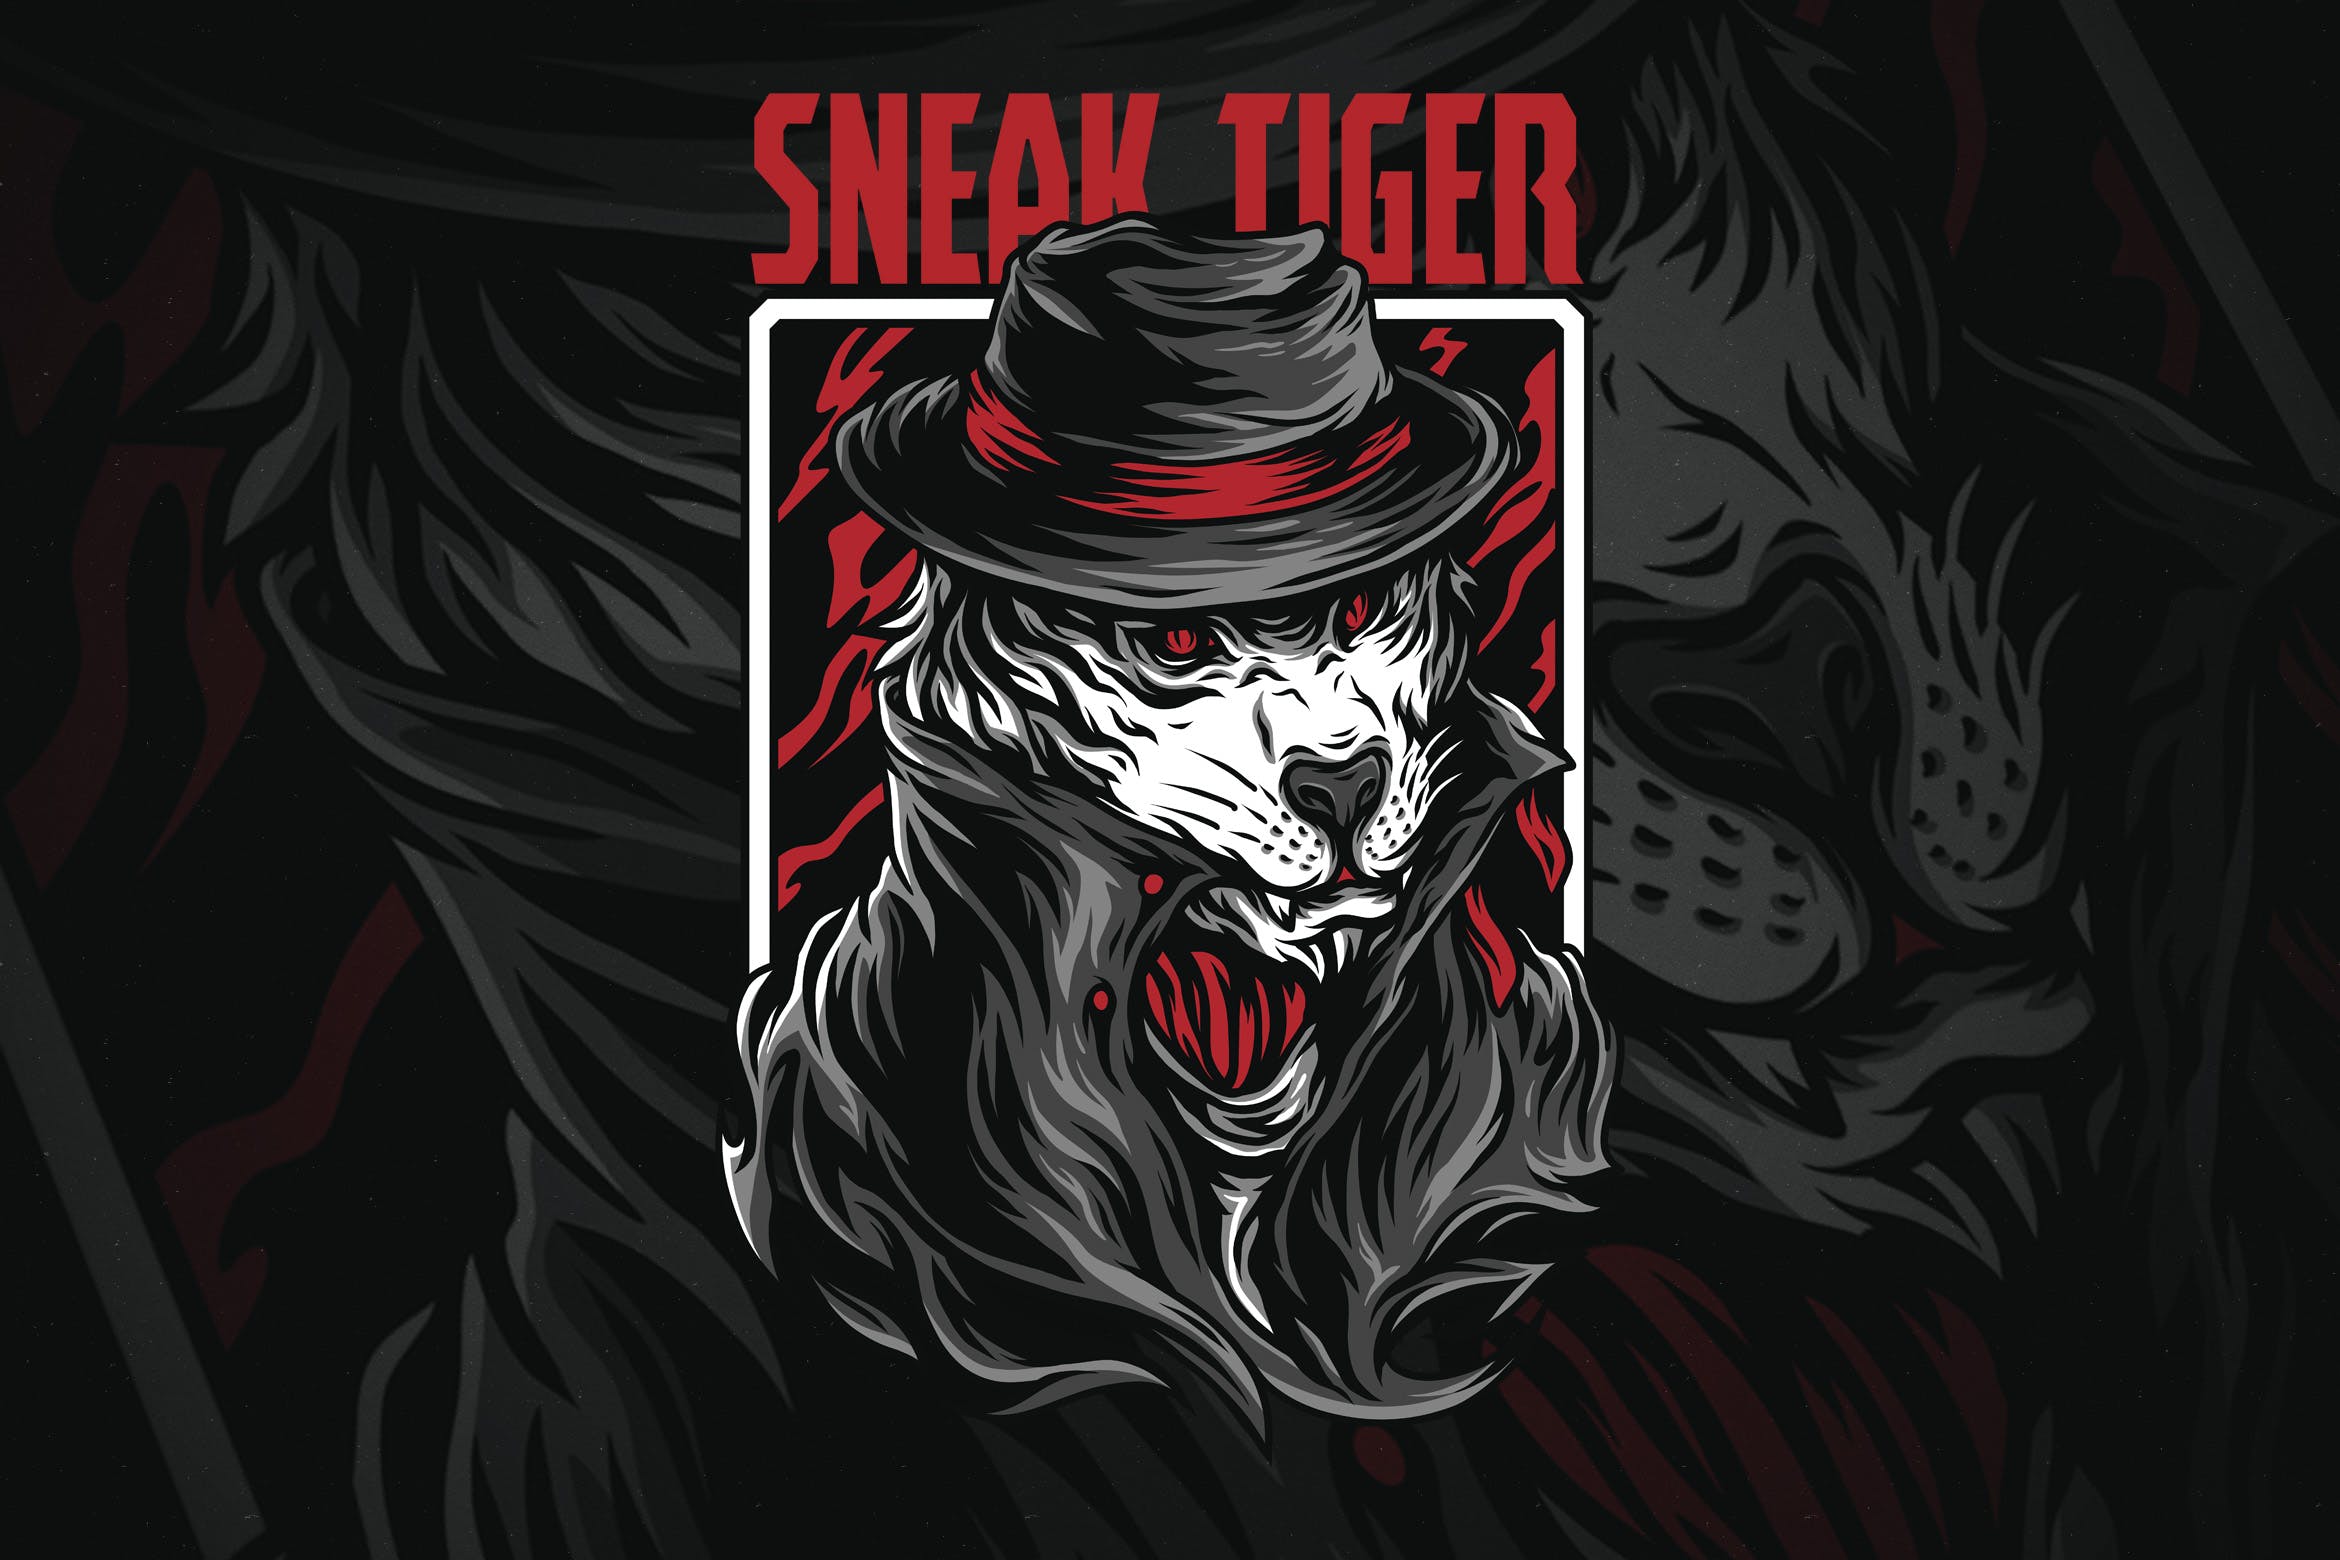 黑帮之虎潮牌T恤印花图案素材库精选设计素材 Sneak Tiger插图